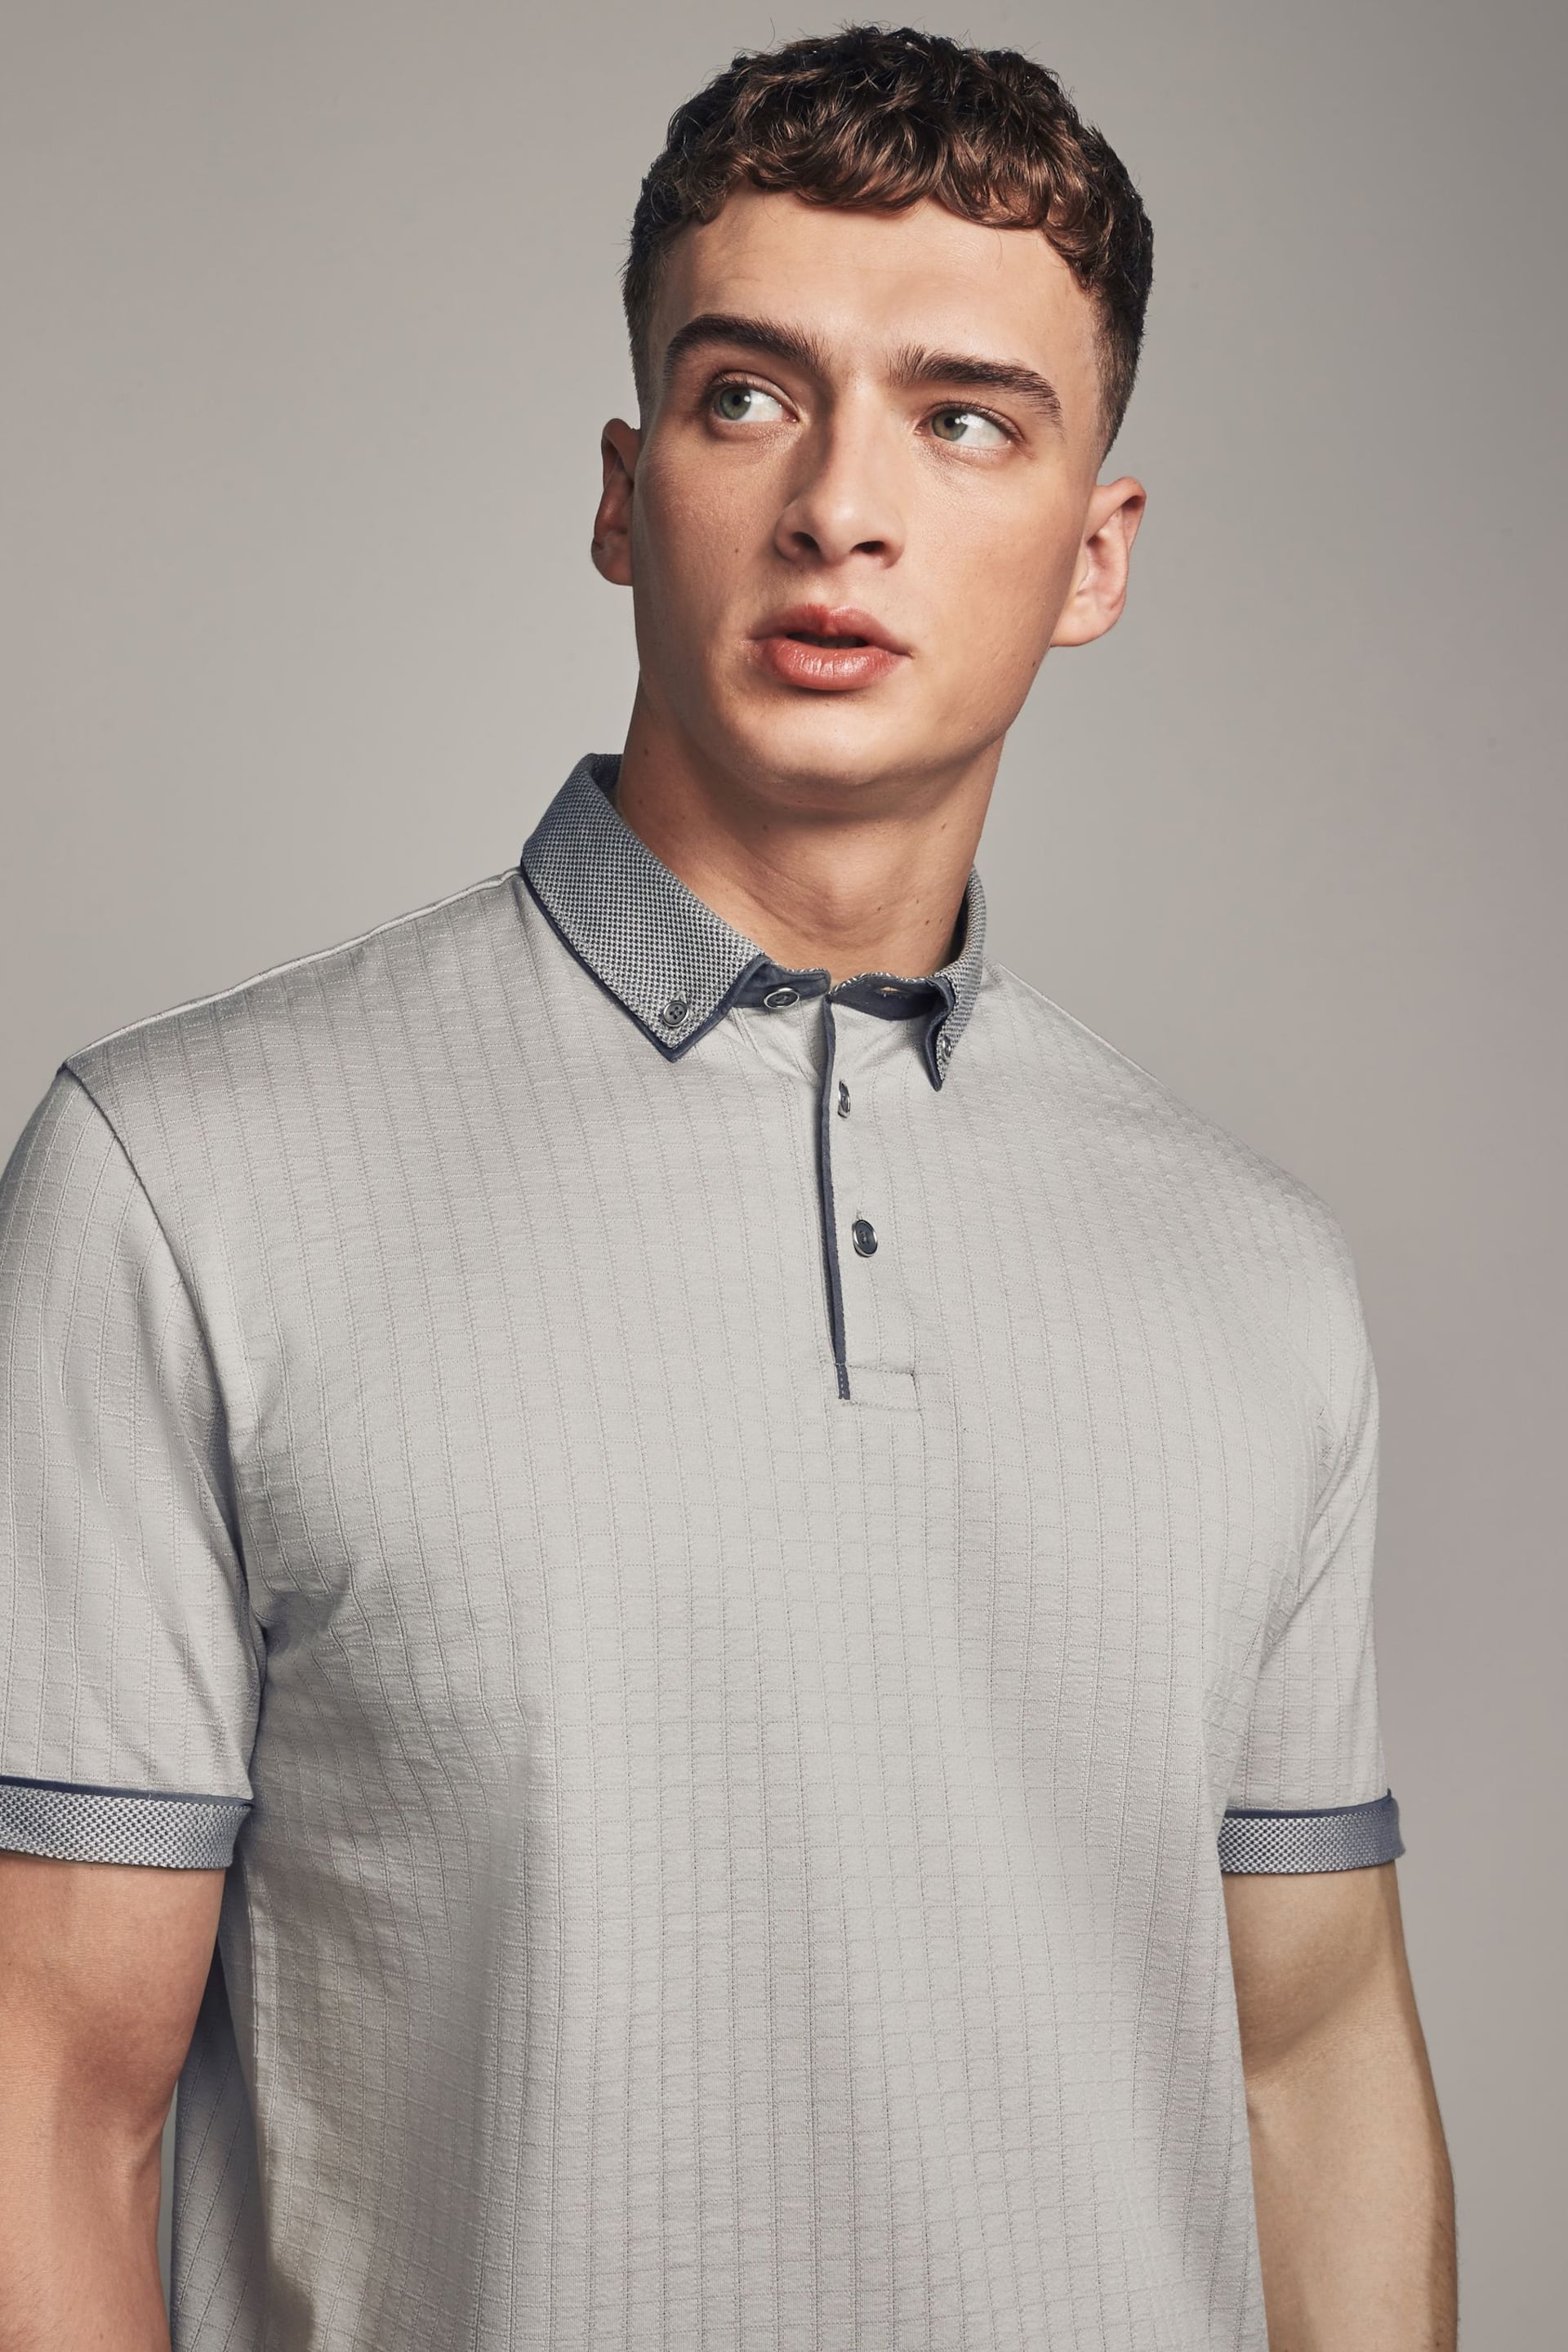 Grey Smart Collar Polo Shirt - Image 2 of 10